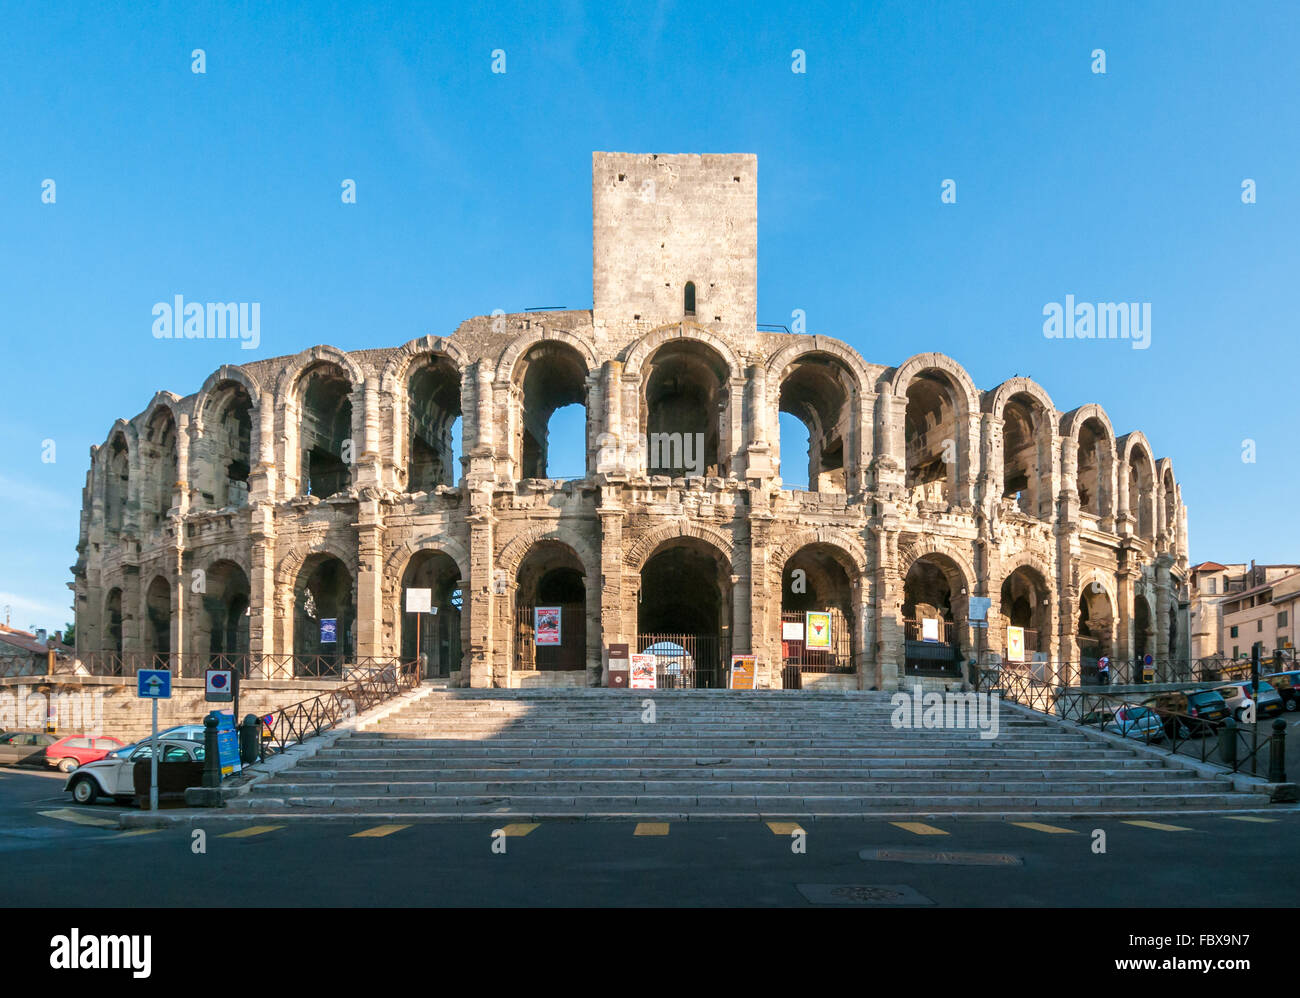 Das Amphitheater von Arles, römische Arena in der französischen Stadt Arles Stockfoto